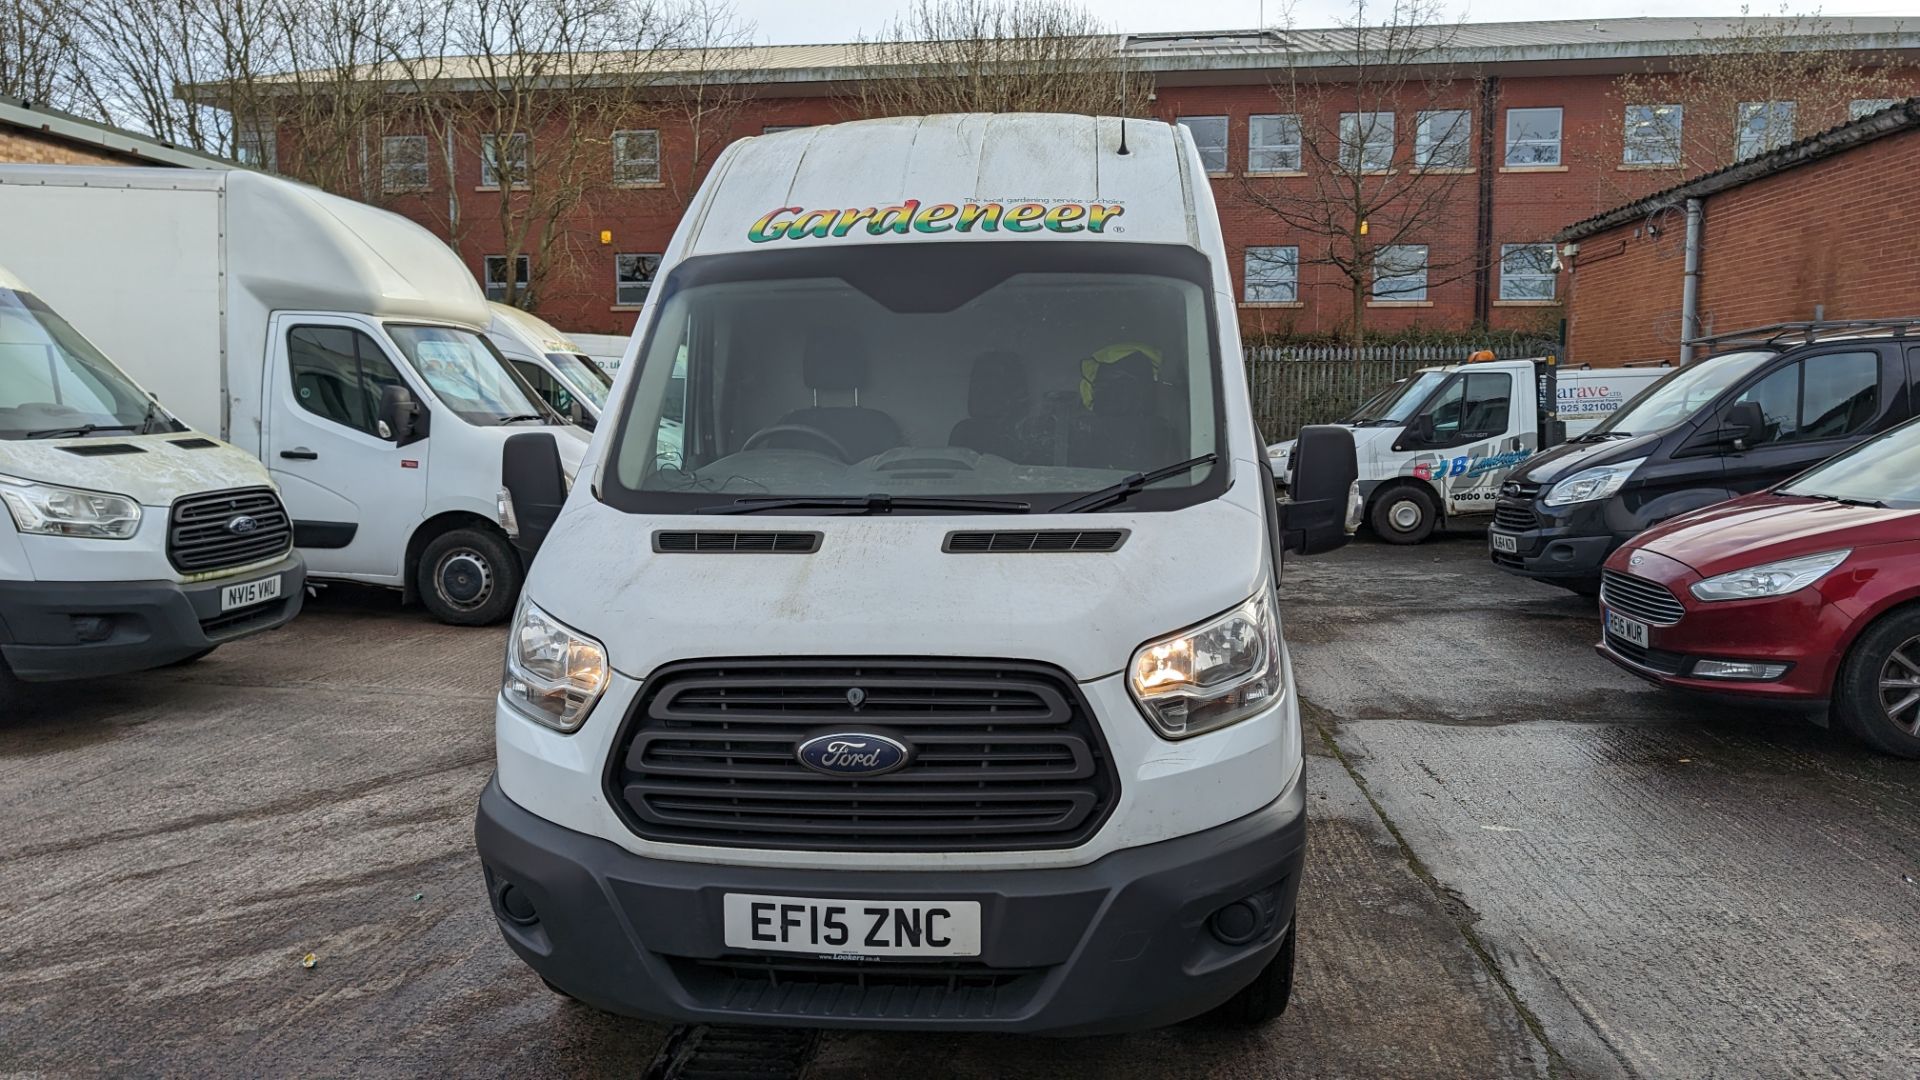 2015 Ford Transit van - Image 3 of 25